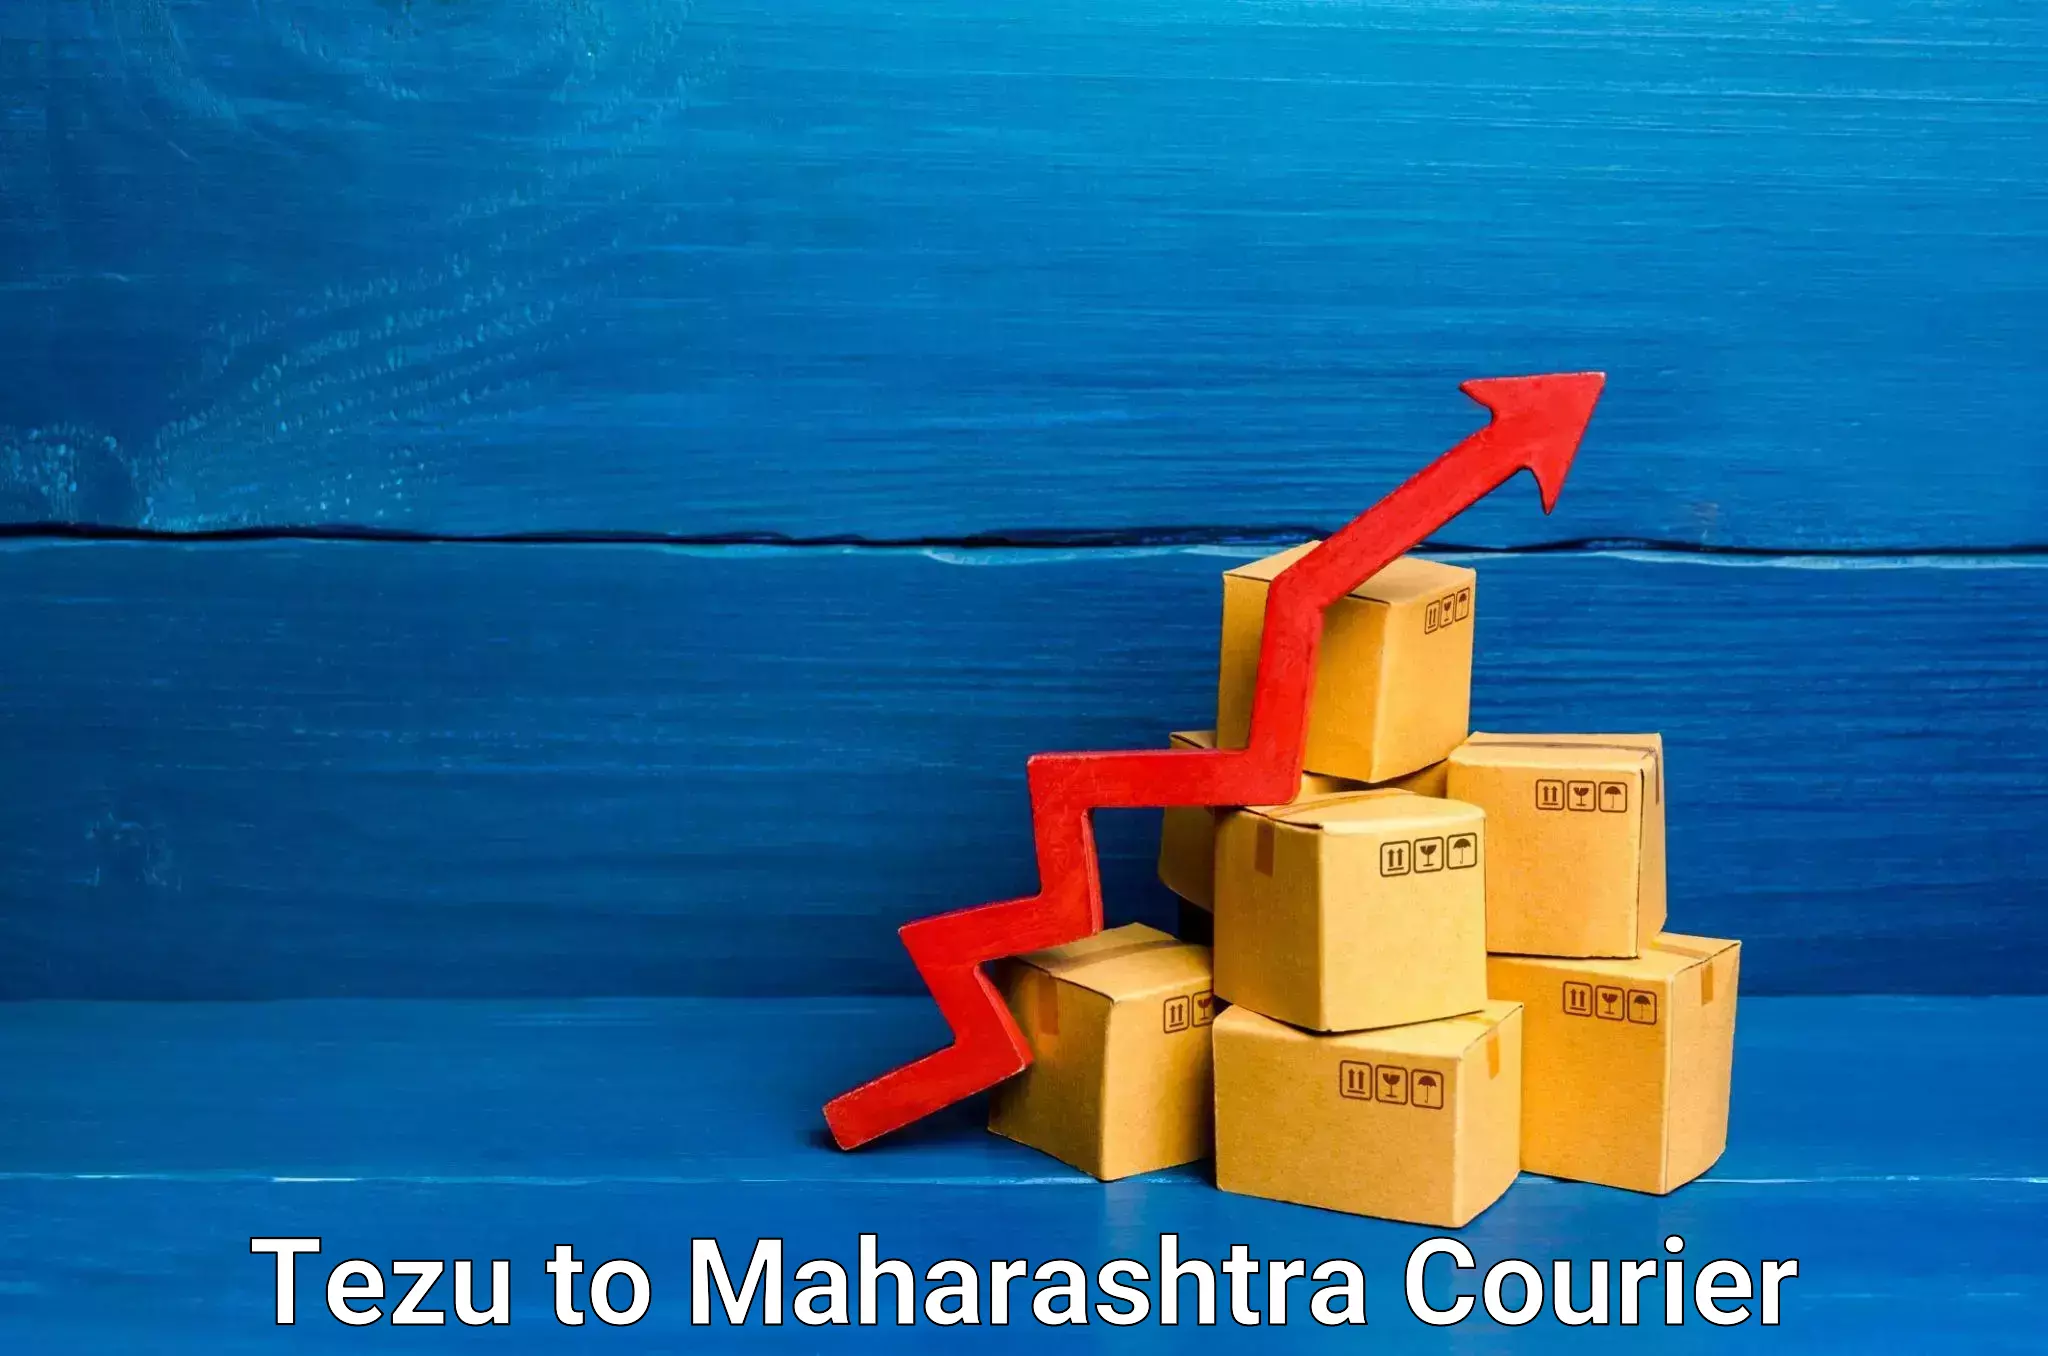 Express courier capabilities Tezu to Maharashtra